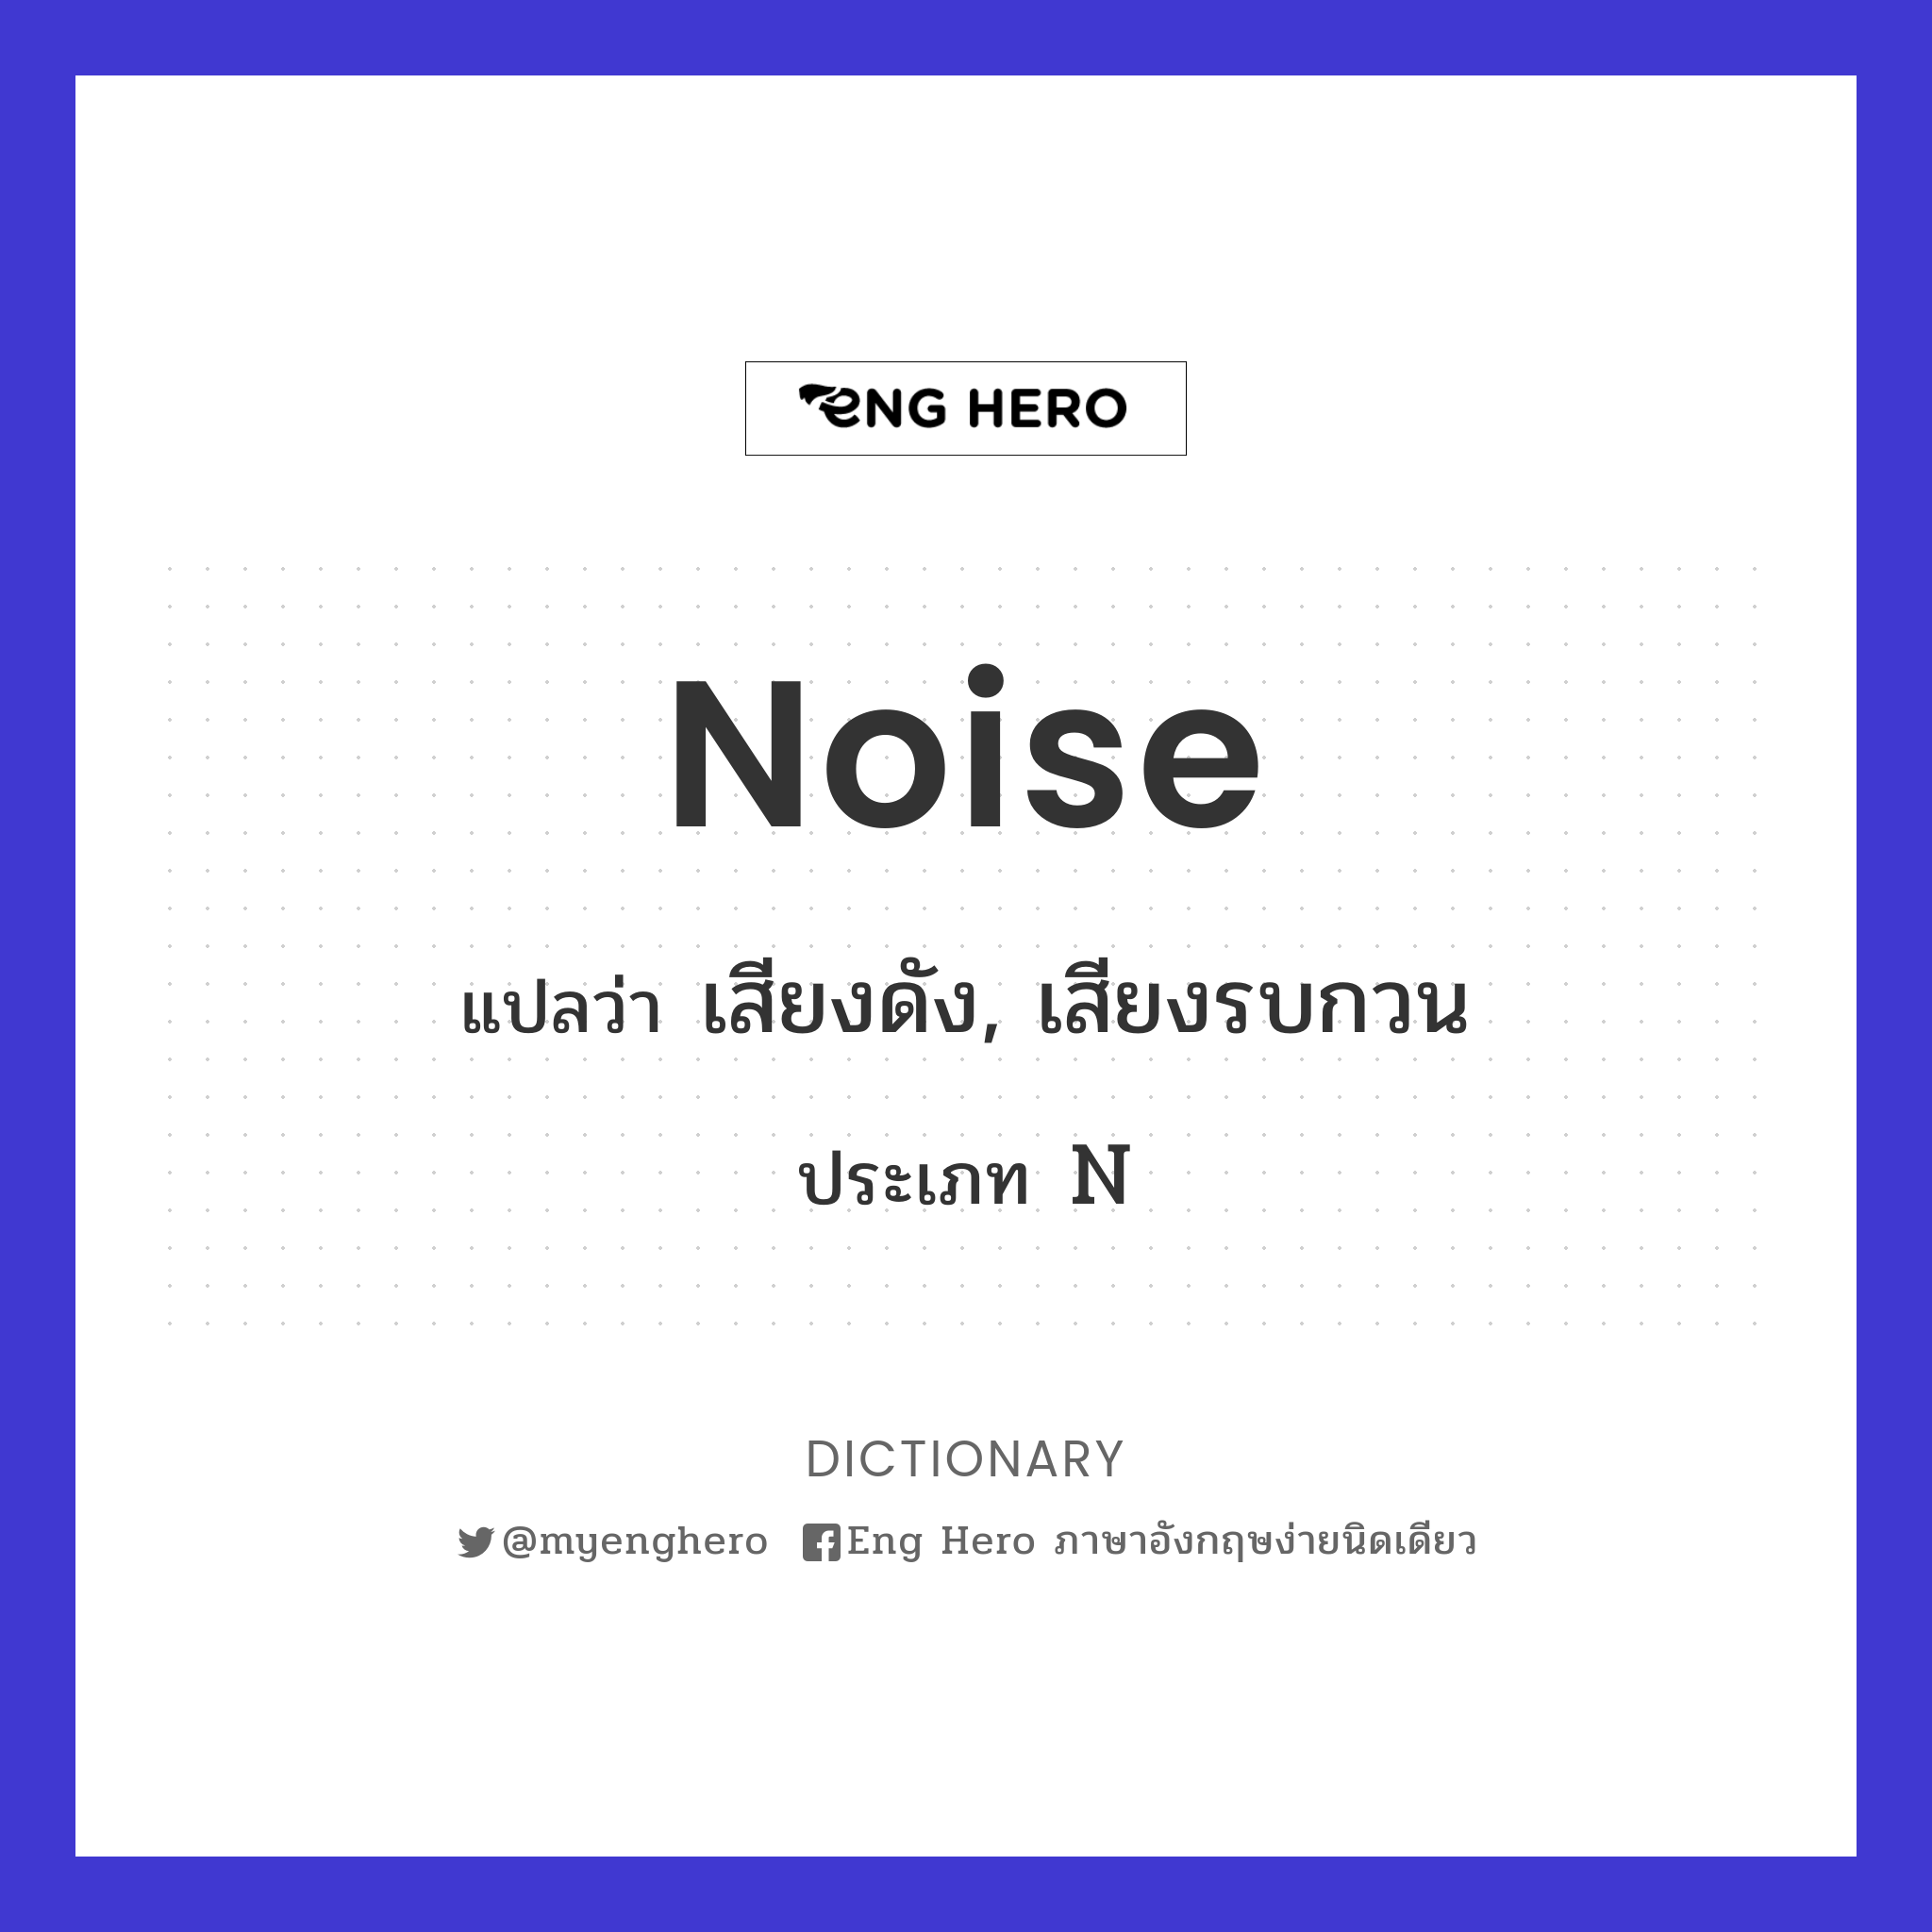 noise